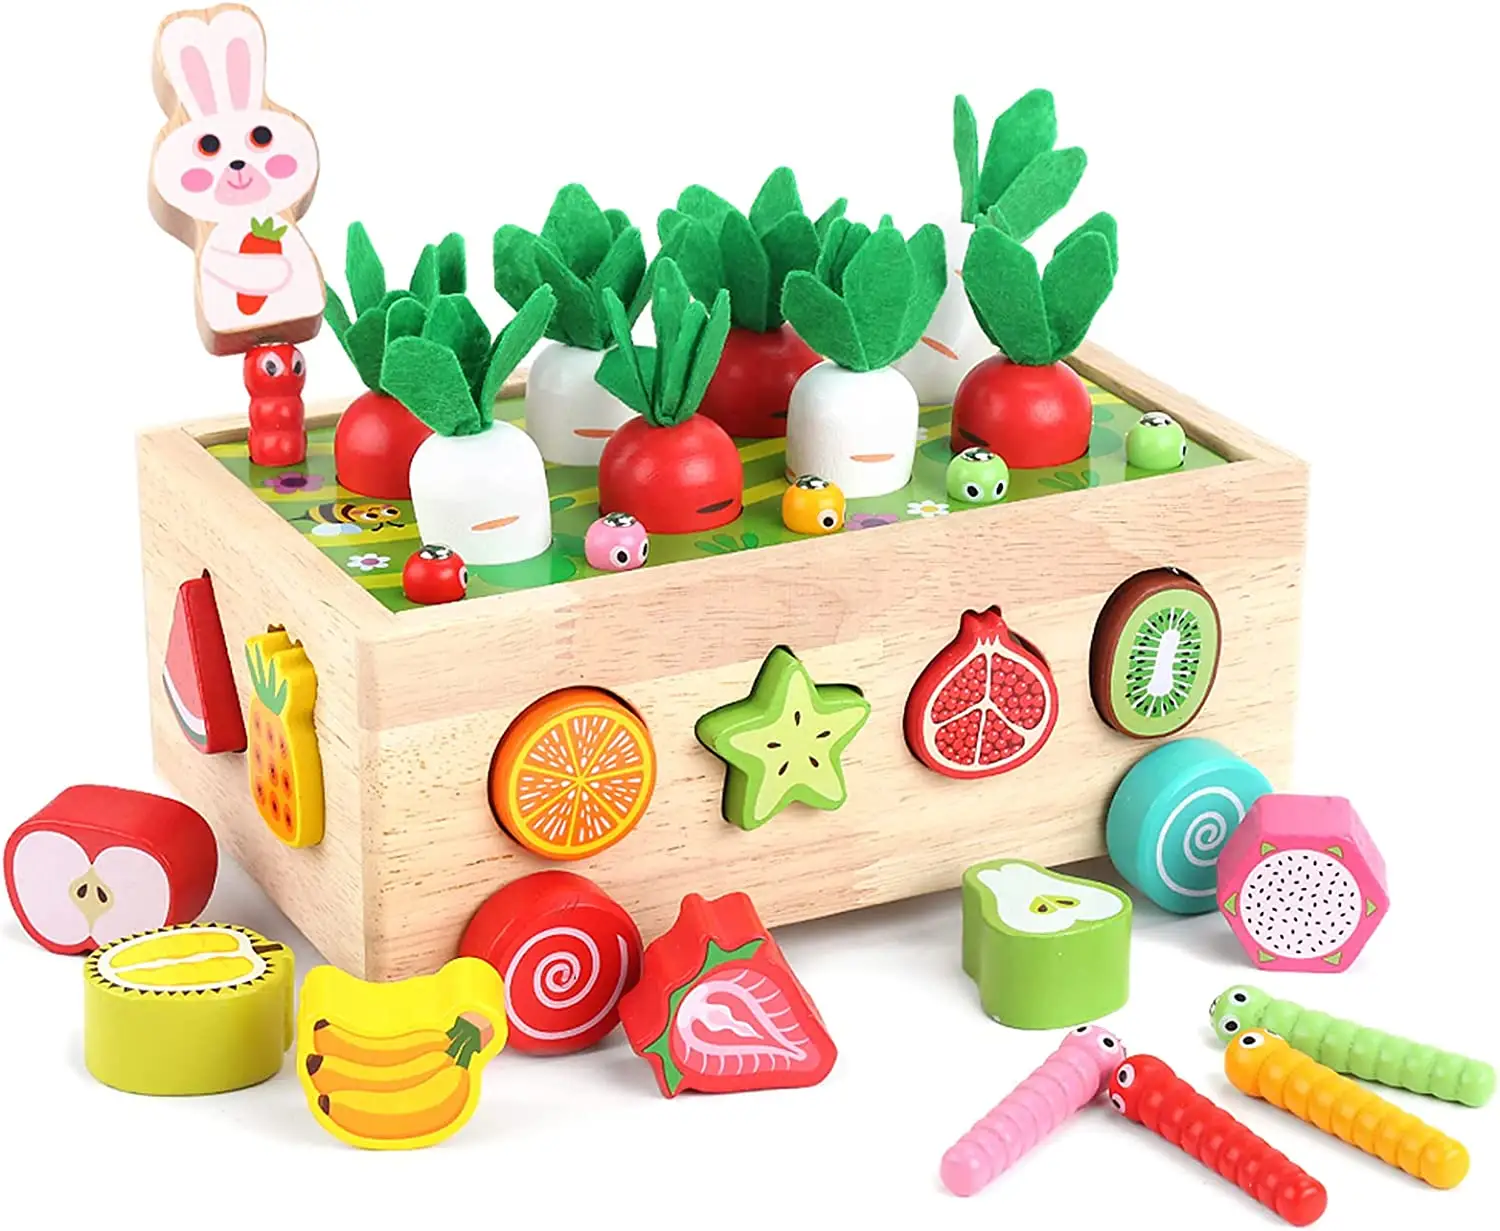 Juguetes Educativos Montessori de madera para niños pequeños, juguetes de clasificación en forma de madera para niños, juego de aprendizaje de habilidades motoras finas